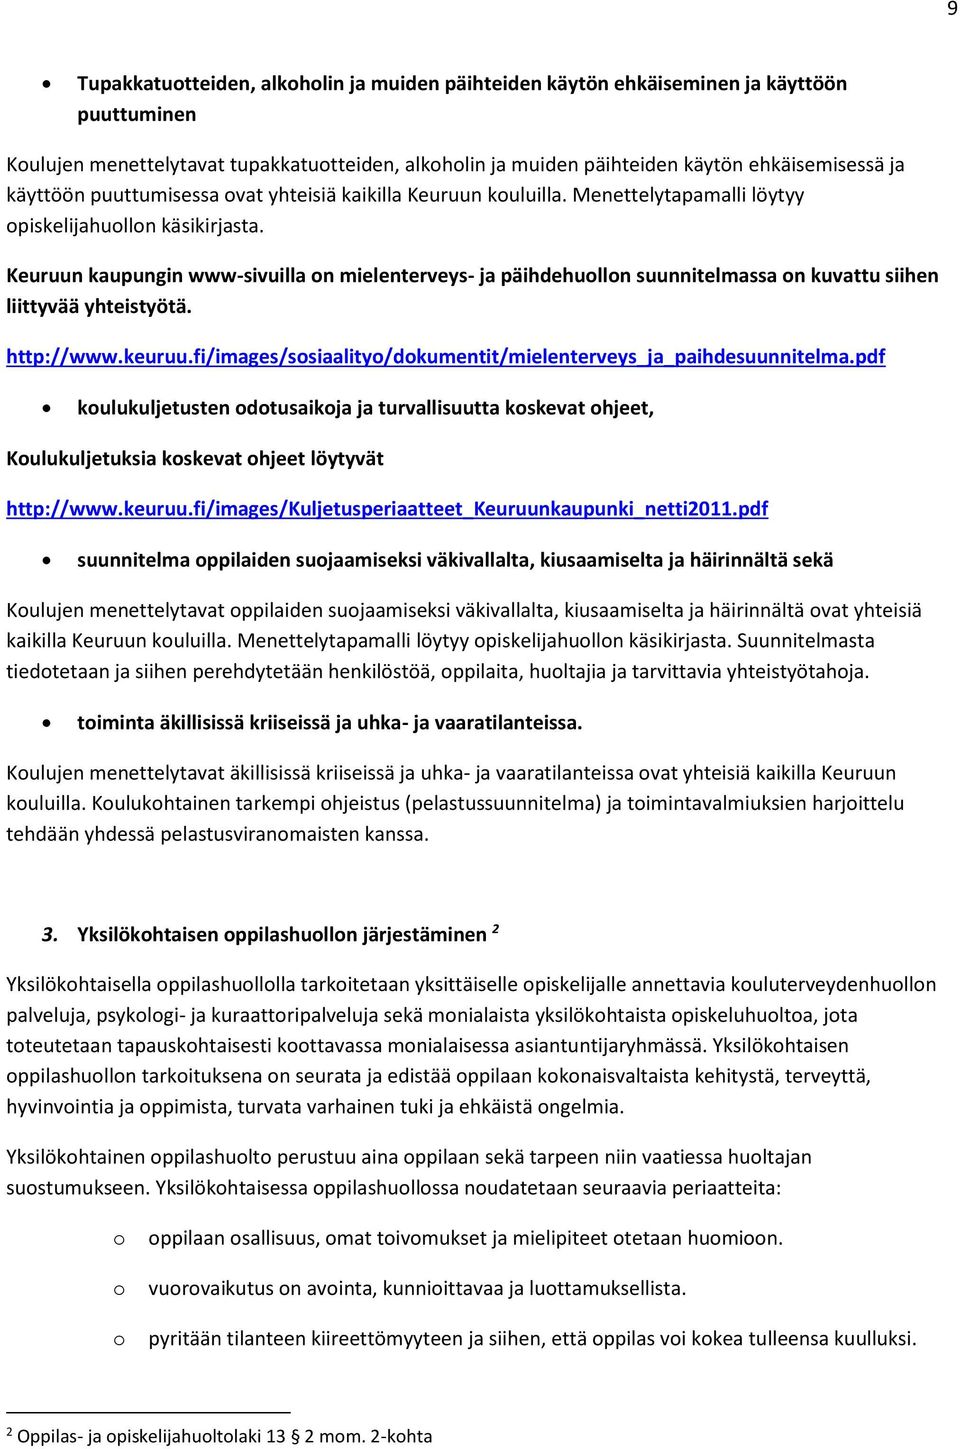 Keuruun kaupungin www-sivuilla on mielenterveys- ja päihdehuollon suunnitelmassa on kuvattu siihen liittyvää yhteistyötä. http://www.keuruu.